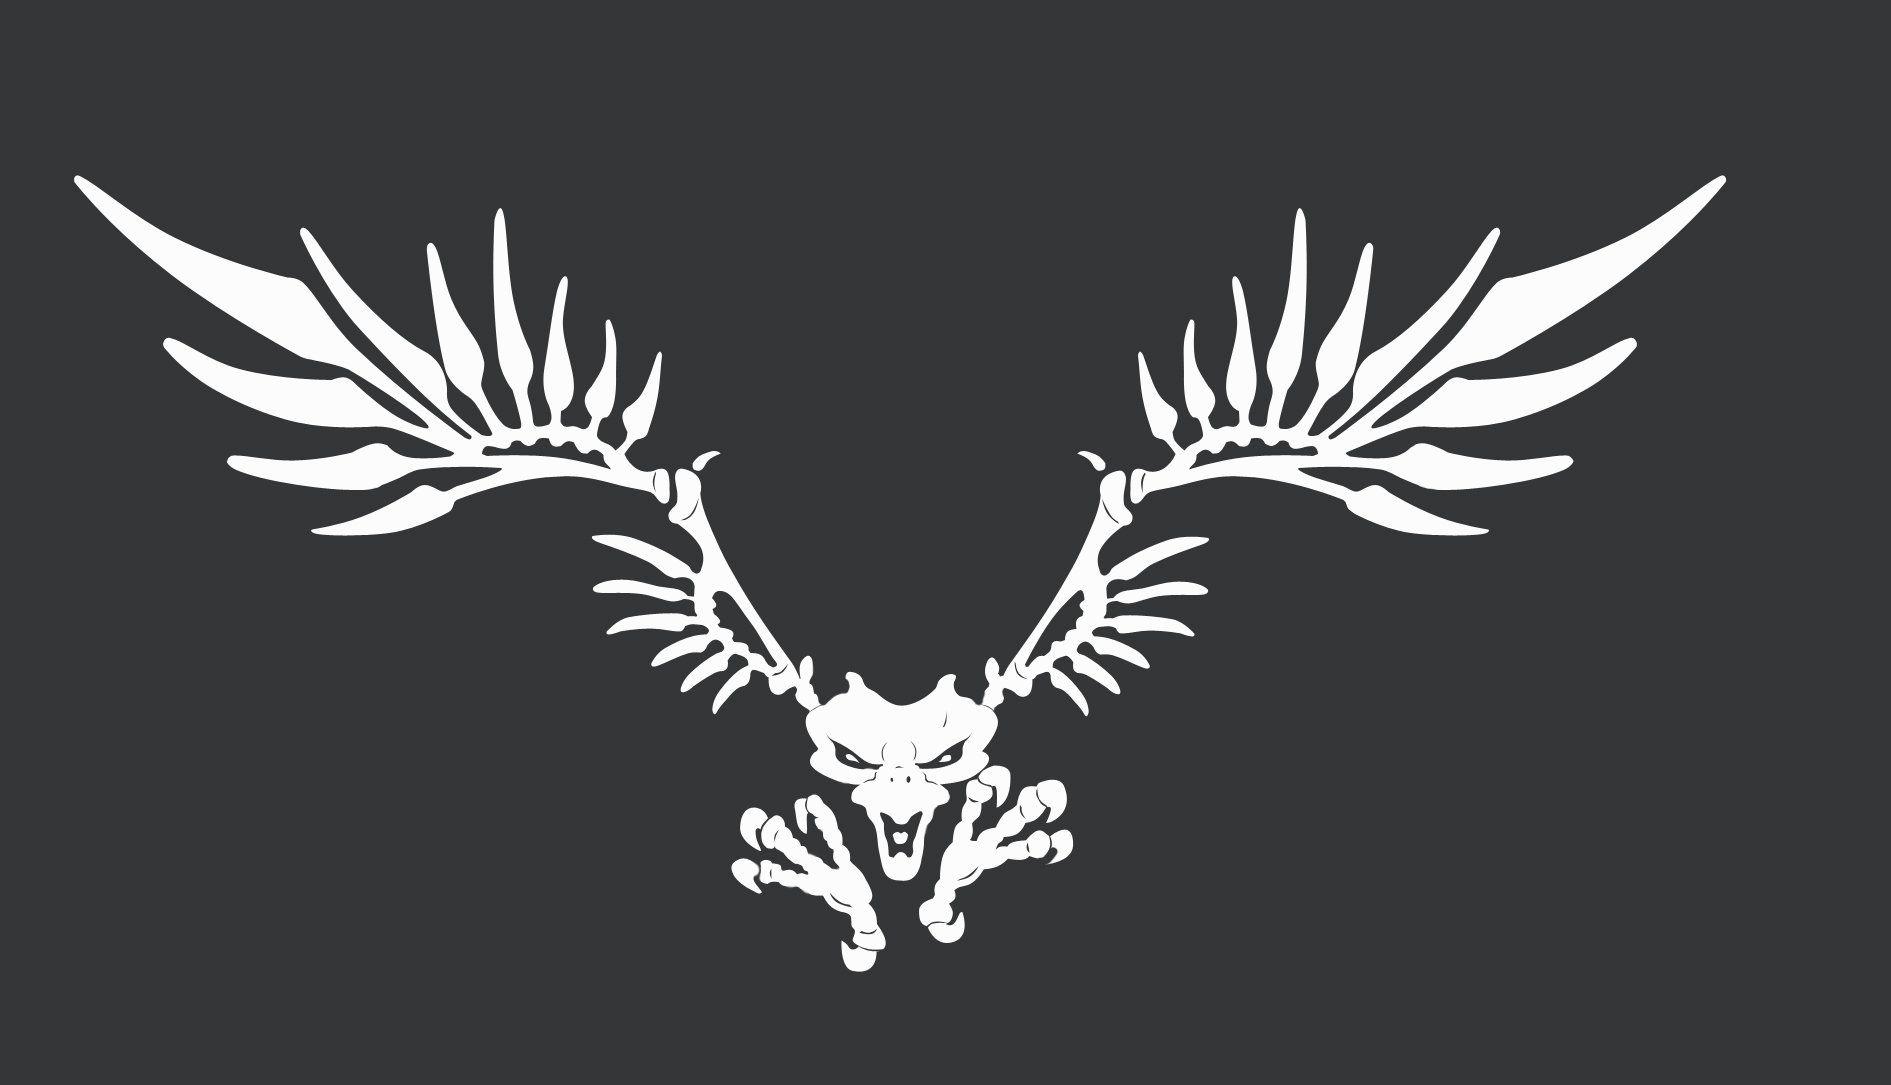 Cool Hawks Logo - Tony hawk Logos